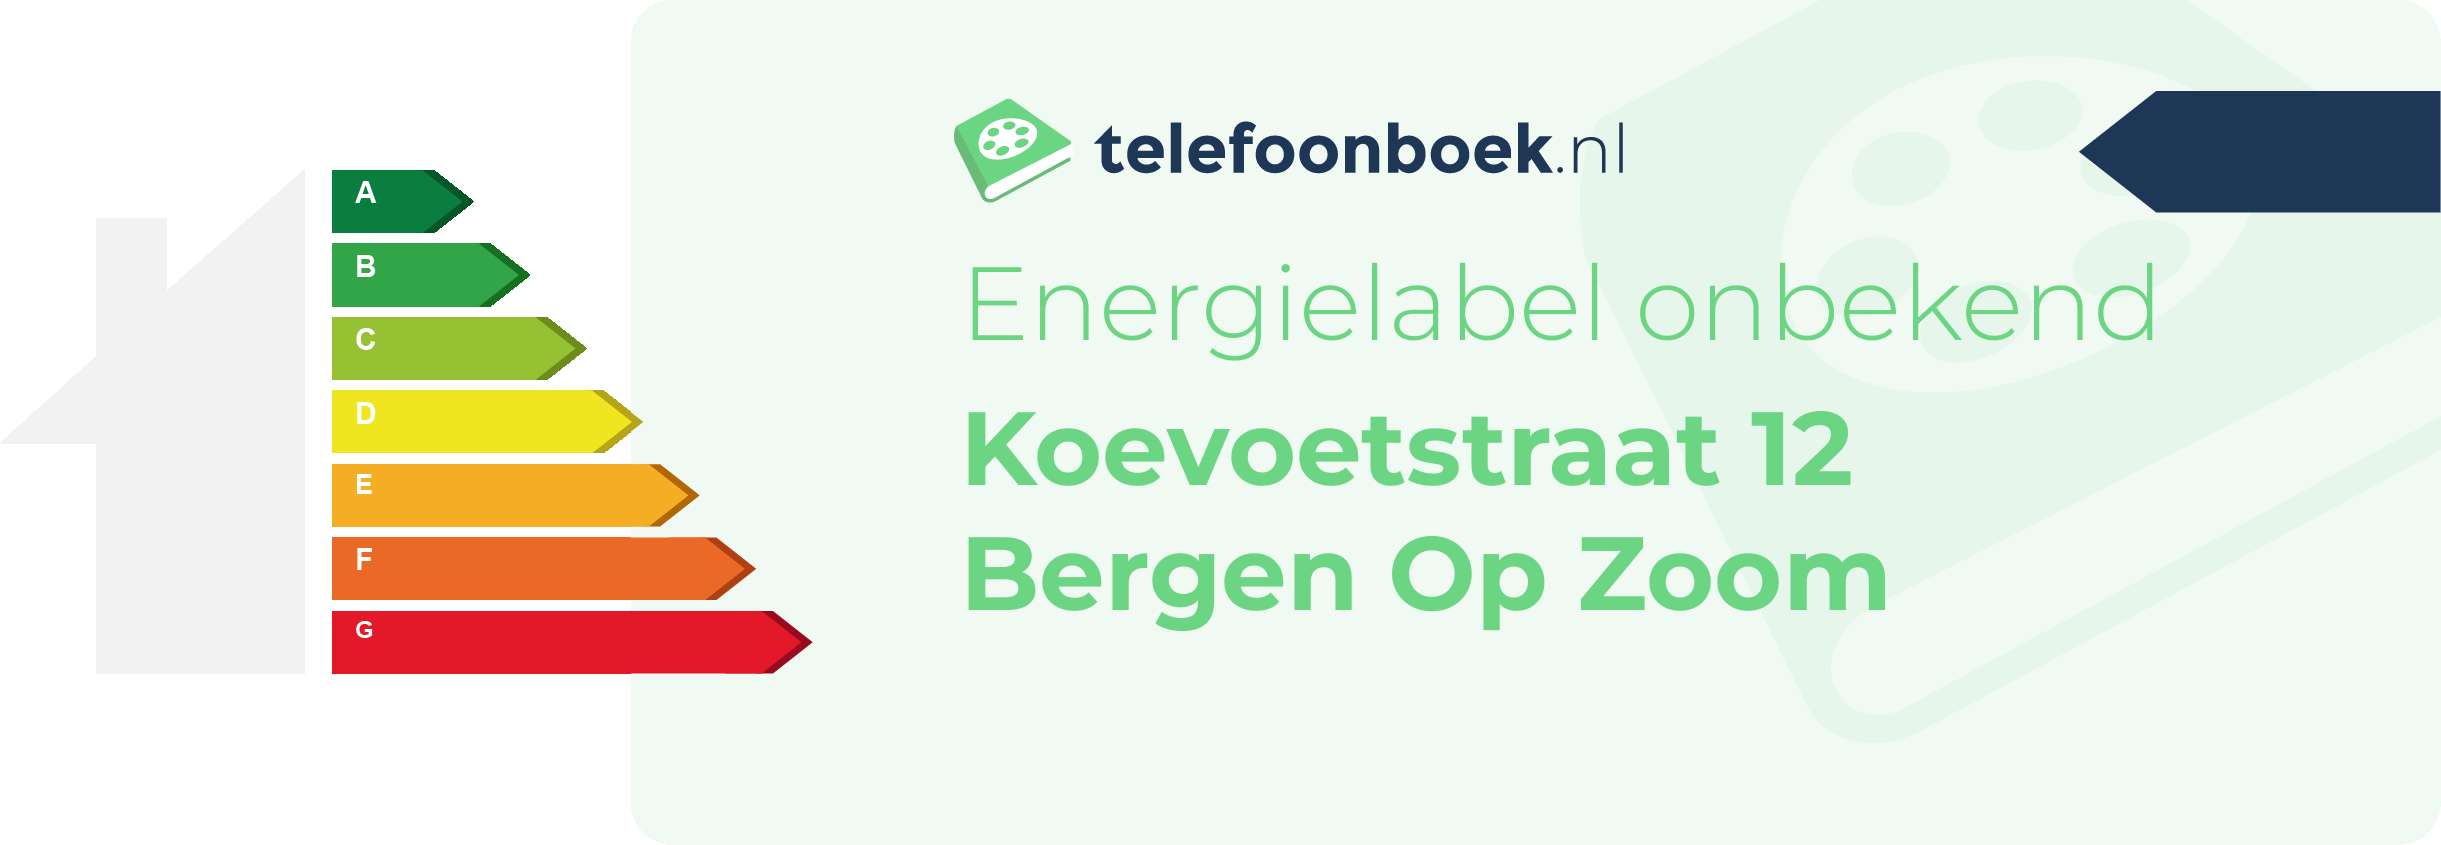 Energielabel Koevoetstraat 12 Bergen Op Zoom